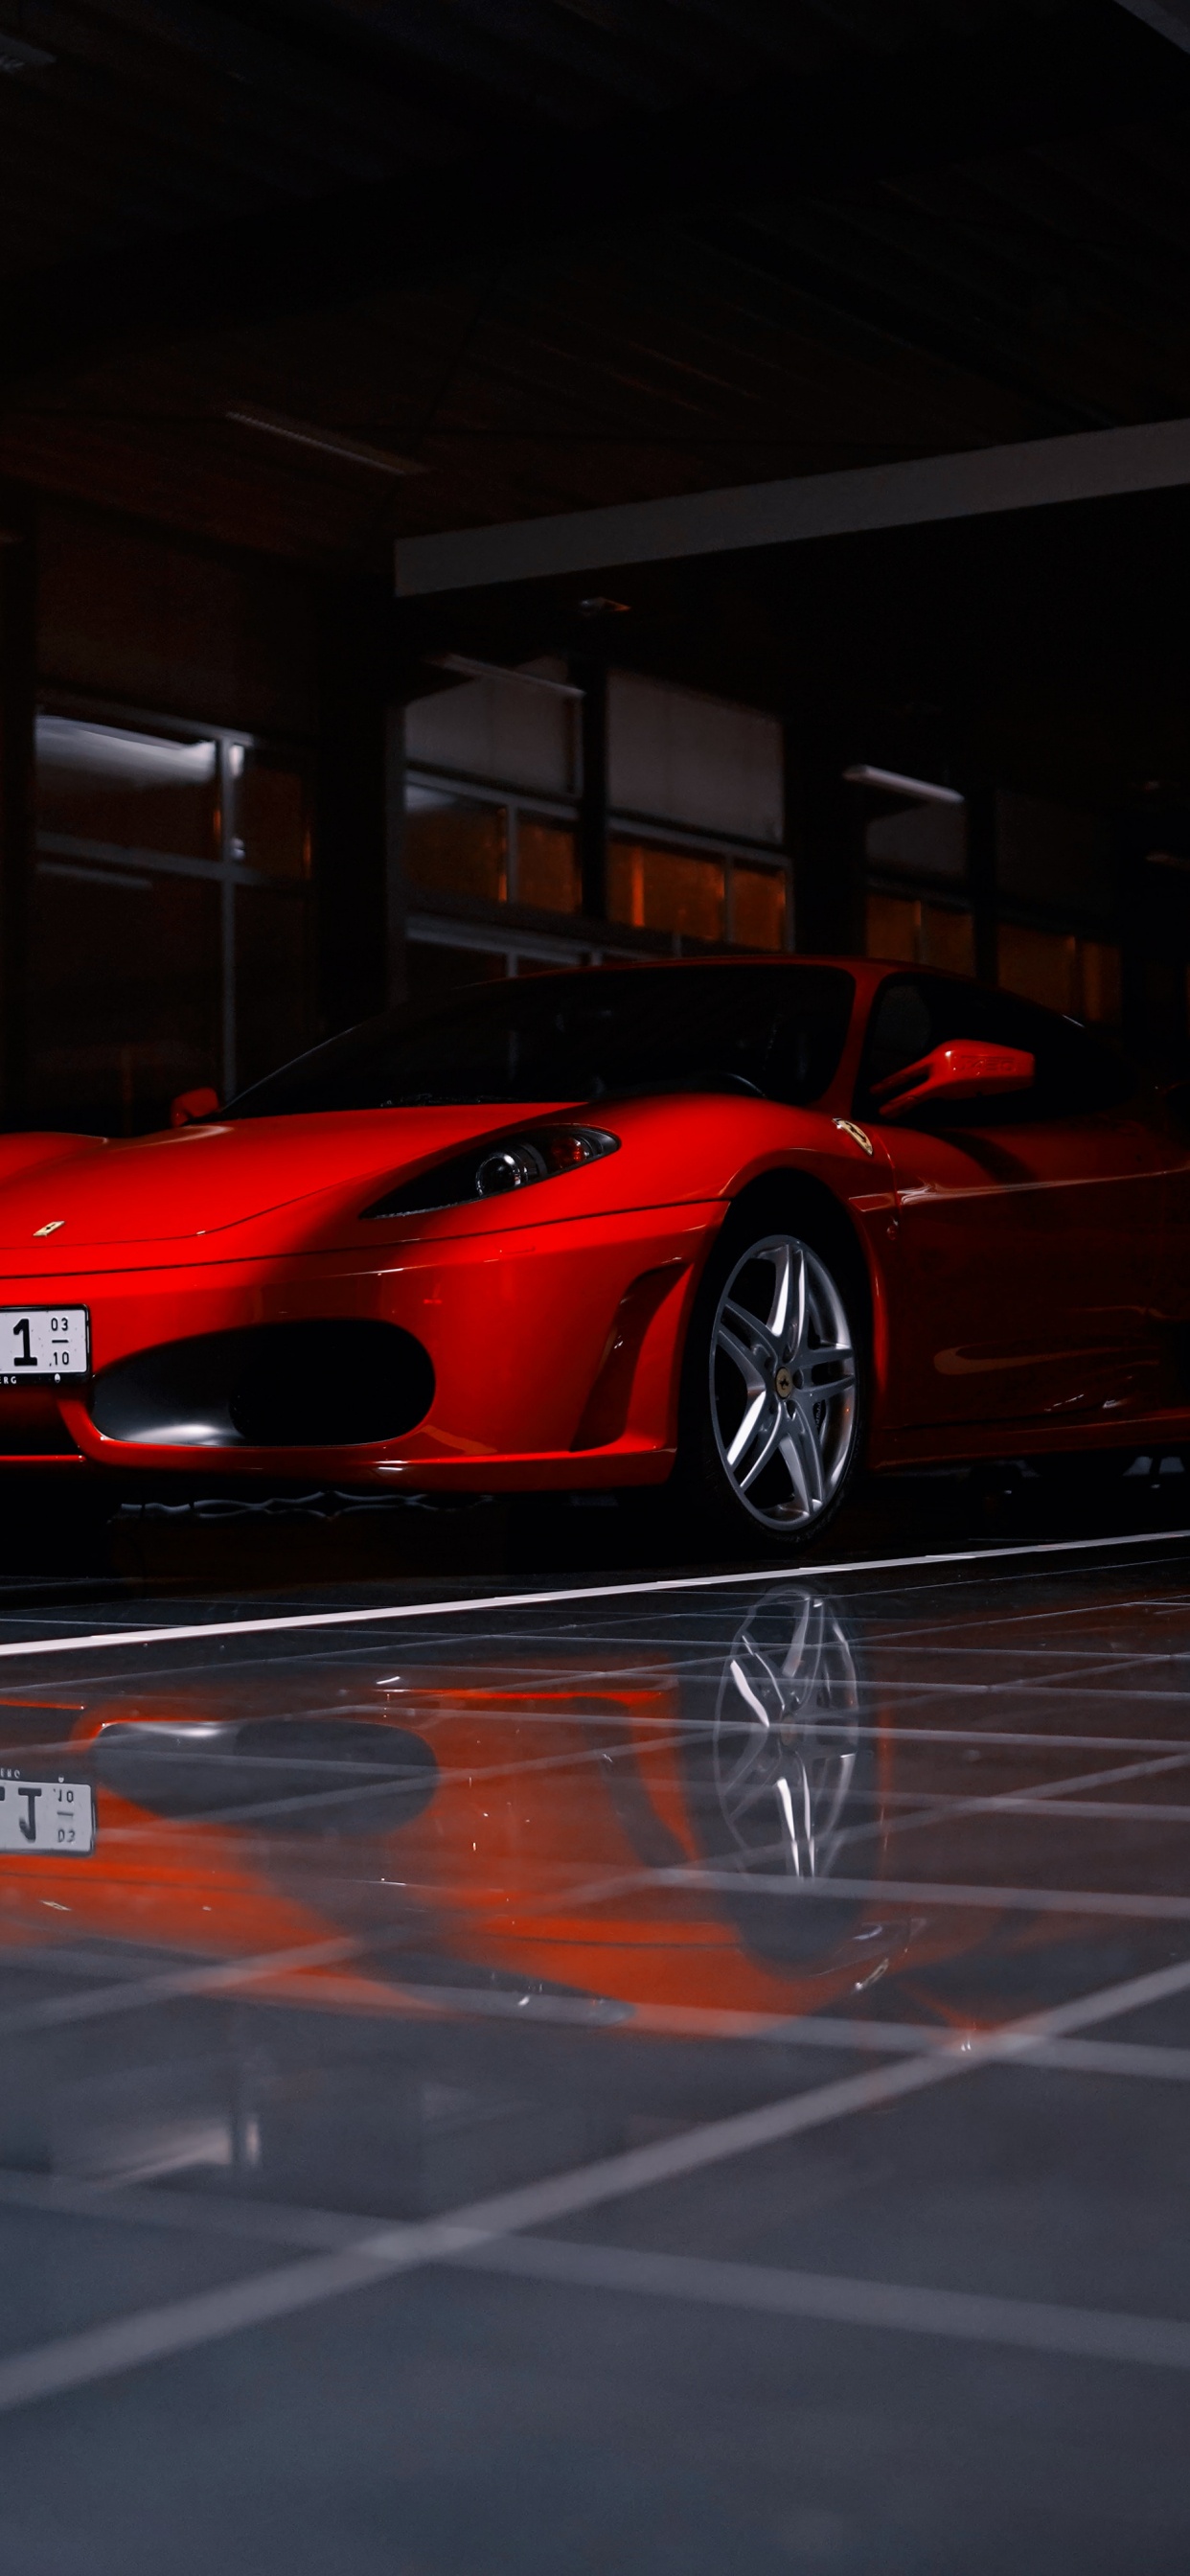 Roter Ferrari 458 Italia Auf Parkplatz Geparkt. Wallpaper in 1242x2688 Resolution